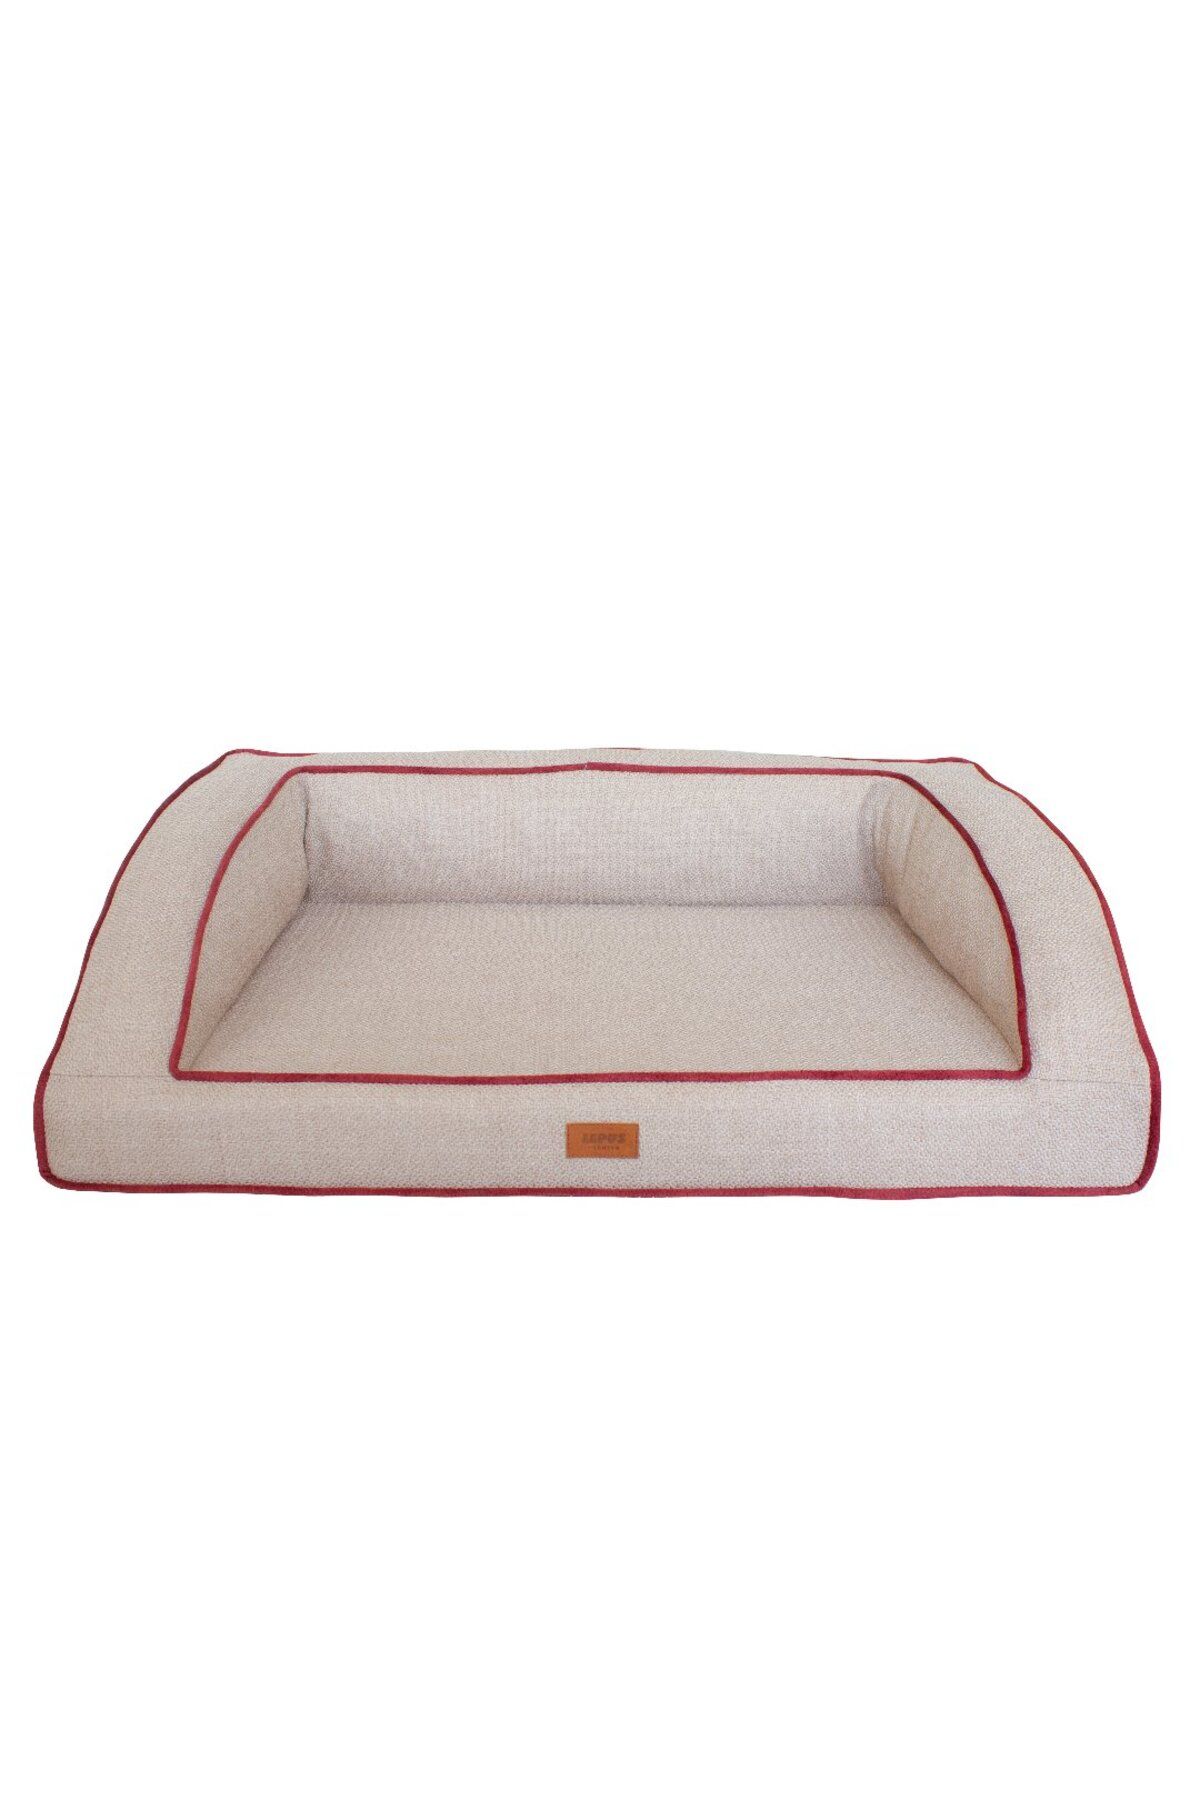 Lepus Sofa Bed, kedi ve köpek yatağı